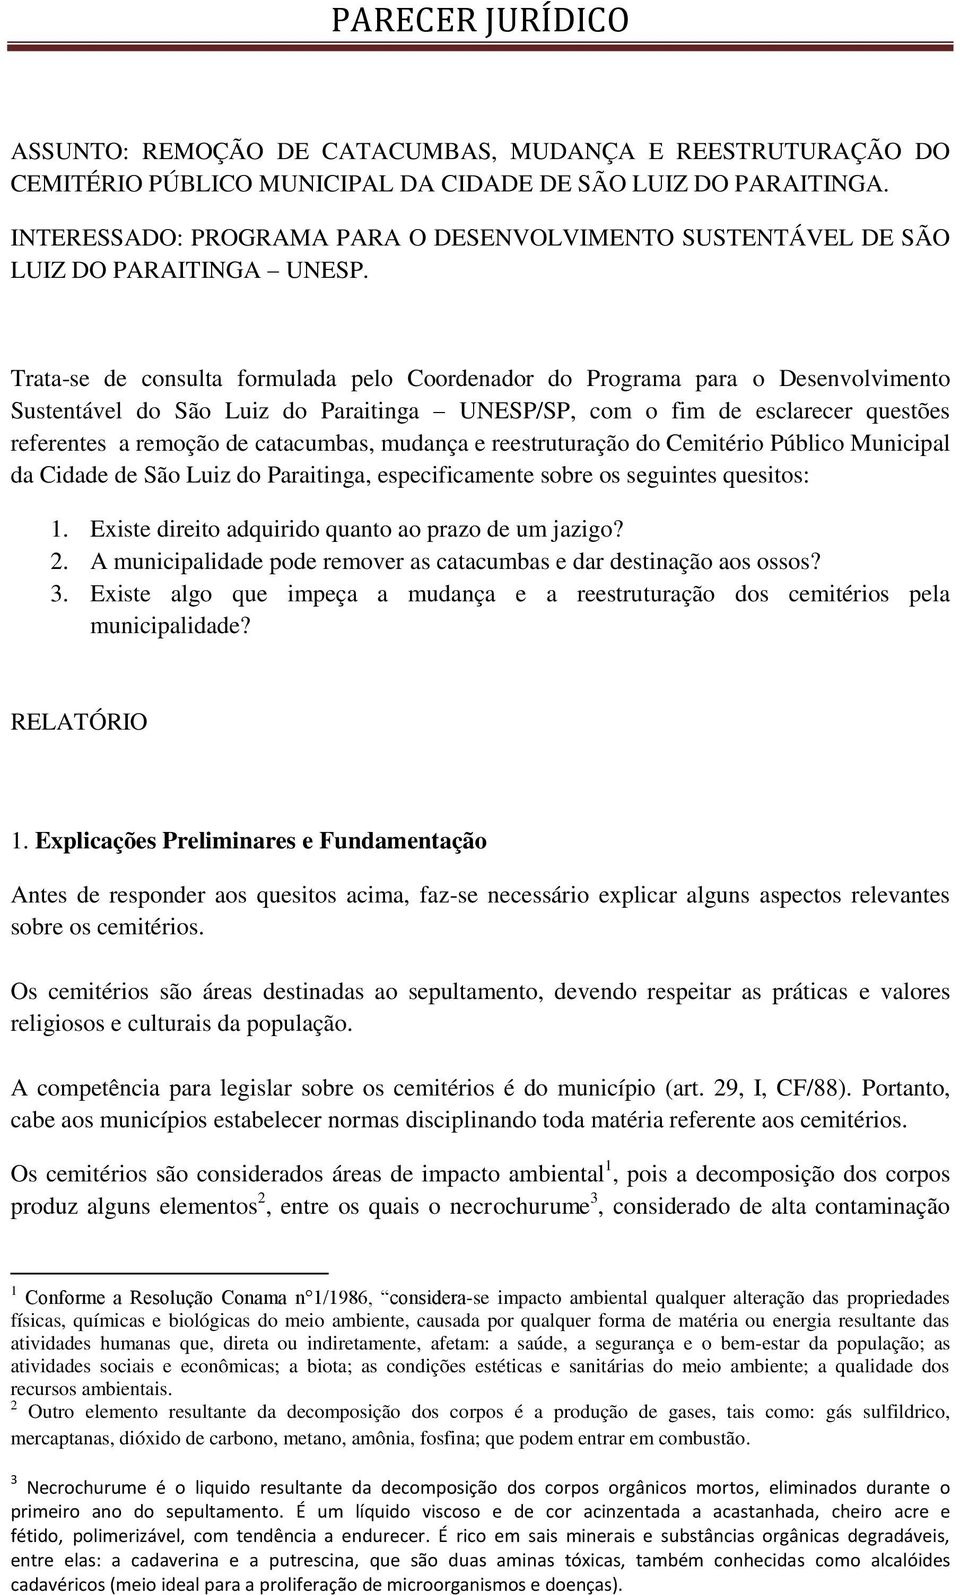 Trata-se de consulta formulada pelo Coordenador do Programa para o Desenvolvimento Sustentável do São Luiz do Paraitinga UNESP/SP, com o fim de esclarecer questões referentes a remoção de catacumbas,